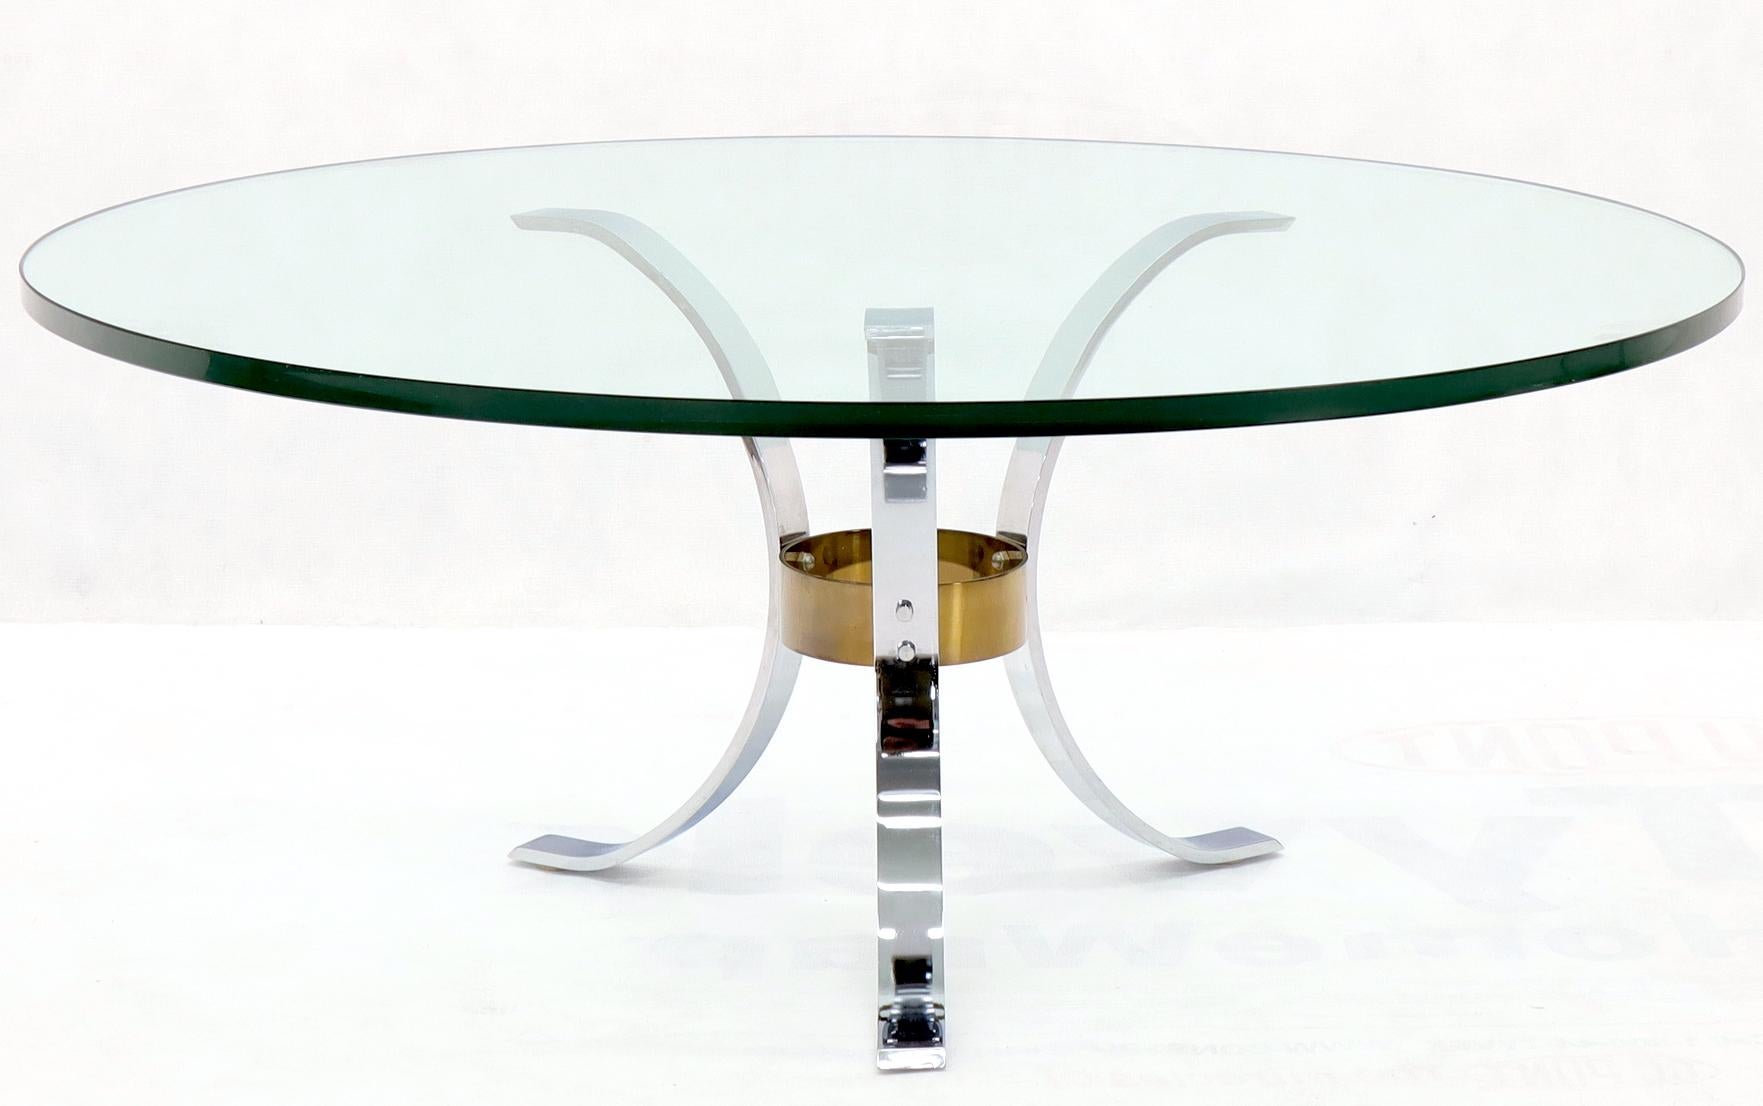 Table basse ronde en chrome et laiton, avec plateau en verre, de style Mid-Century Modern. Plateau en verre épais de 3/4